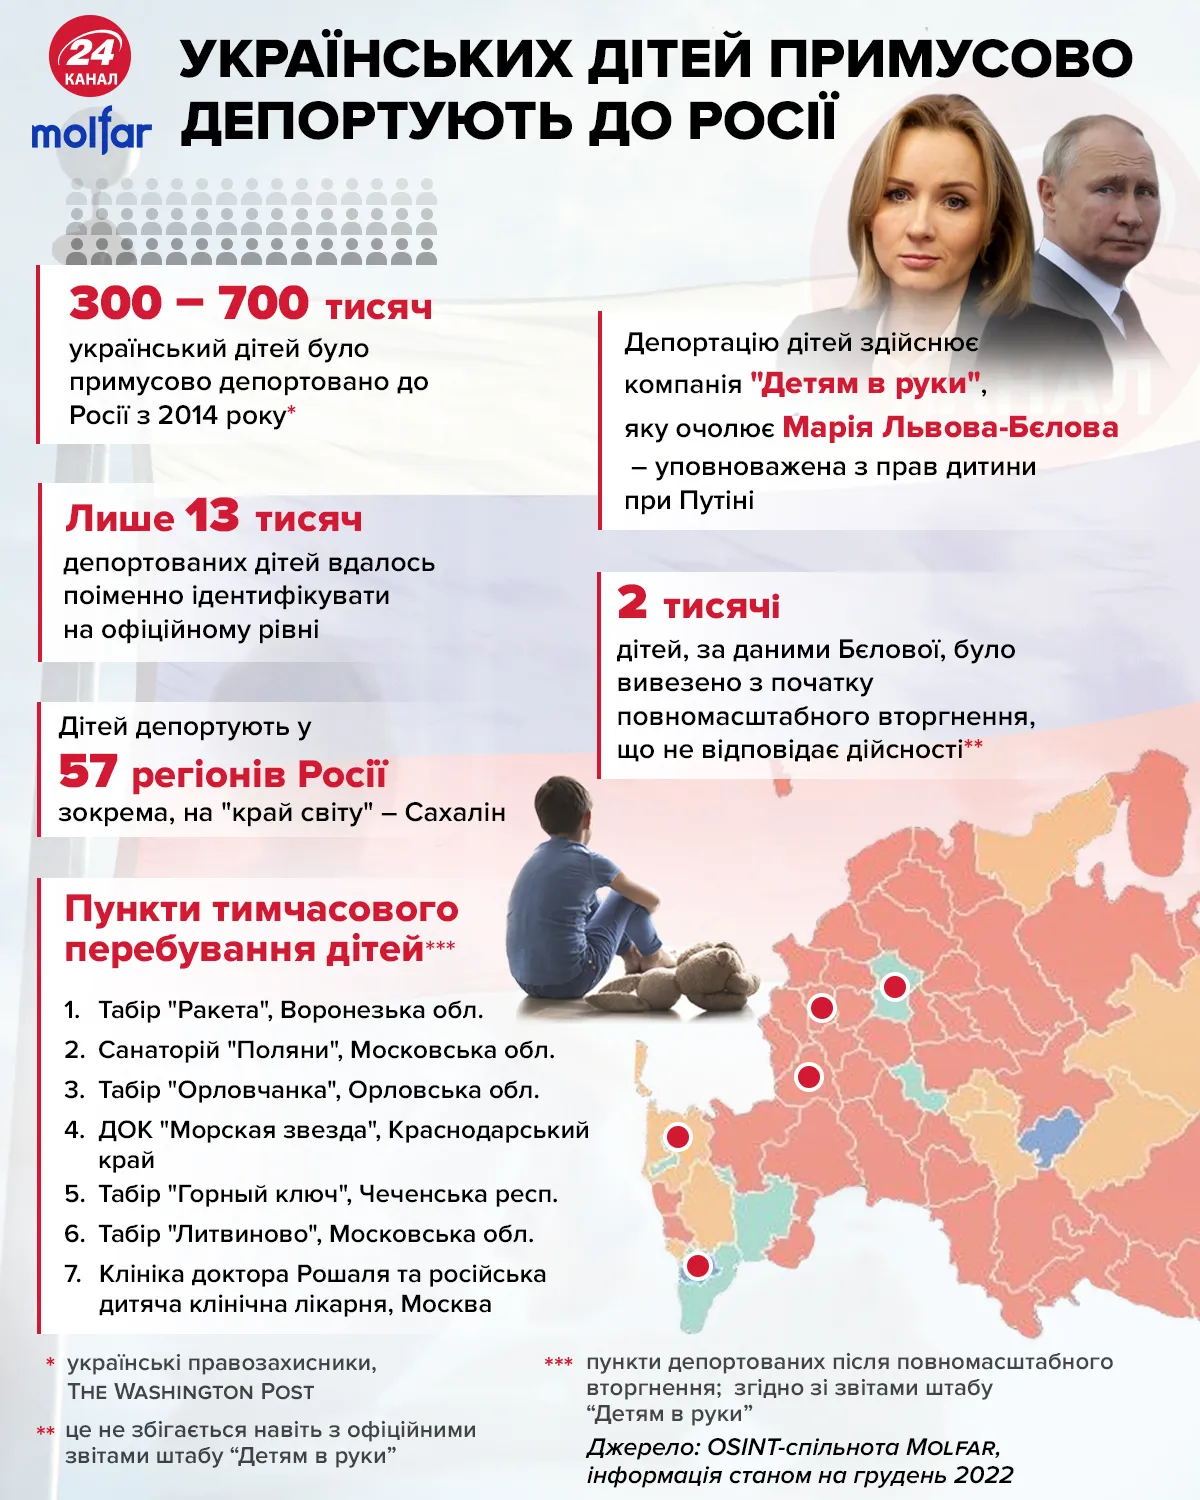 Украинских детей принудительно депортируют в Россию / Инфографика 24 канала